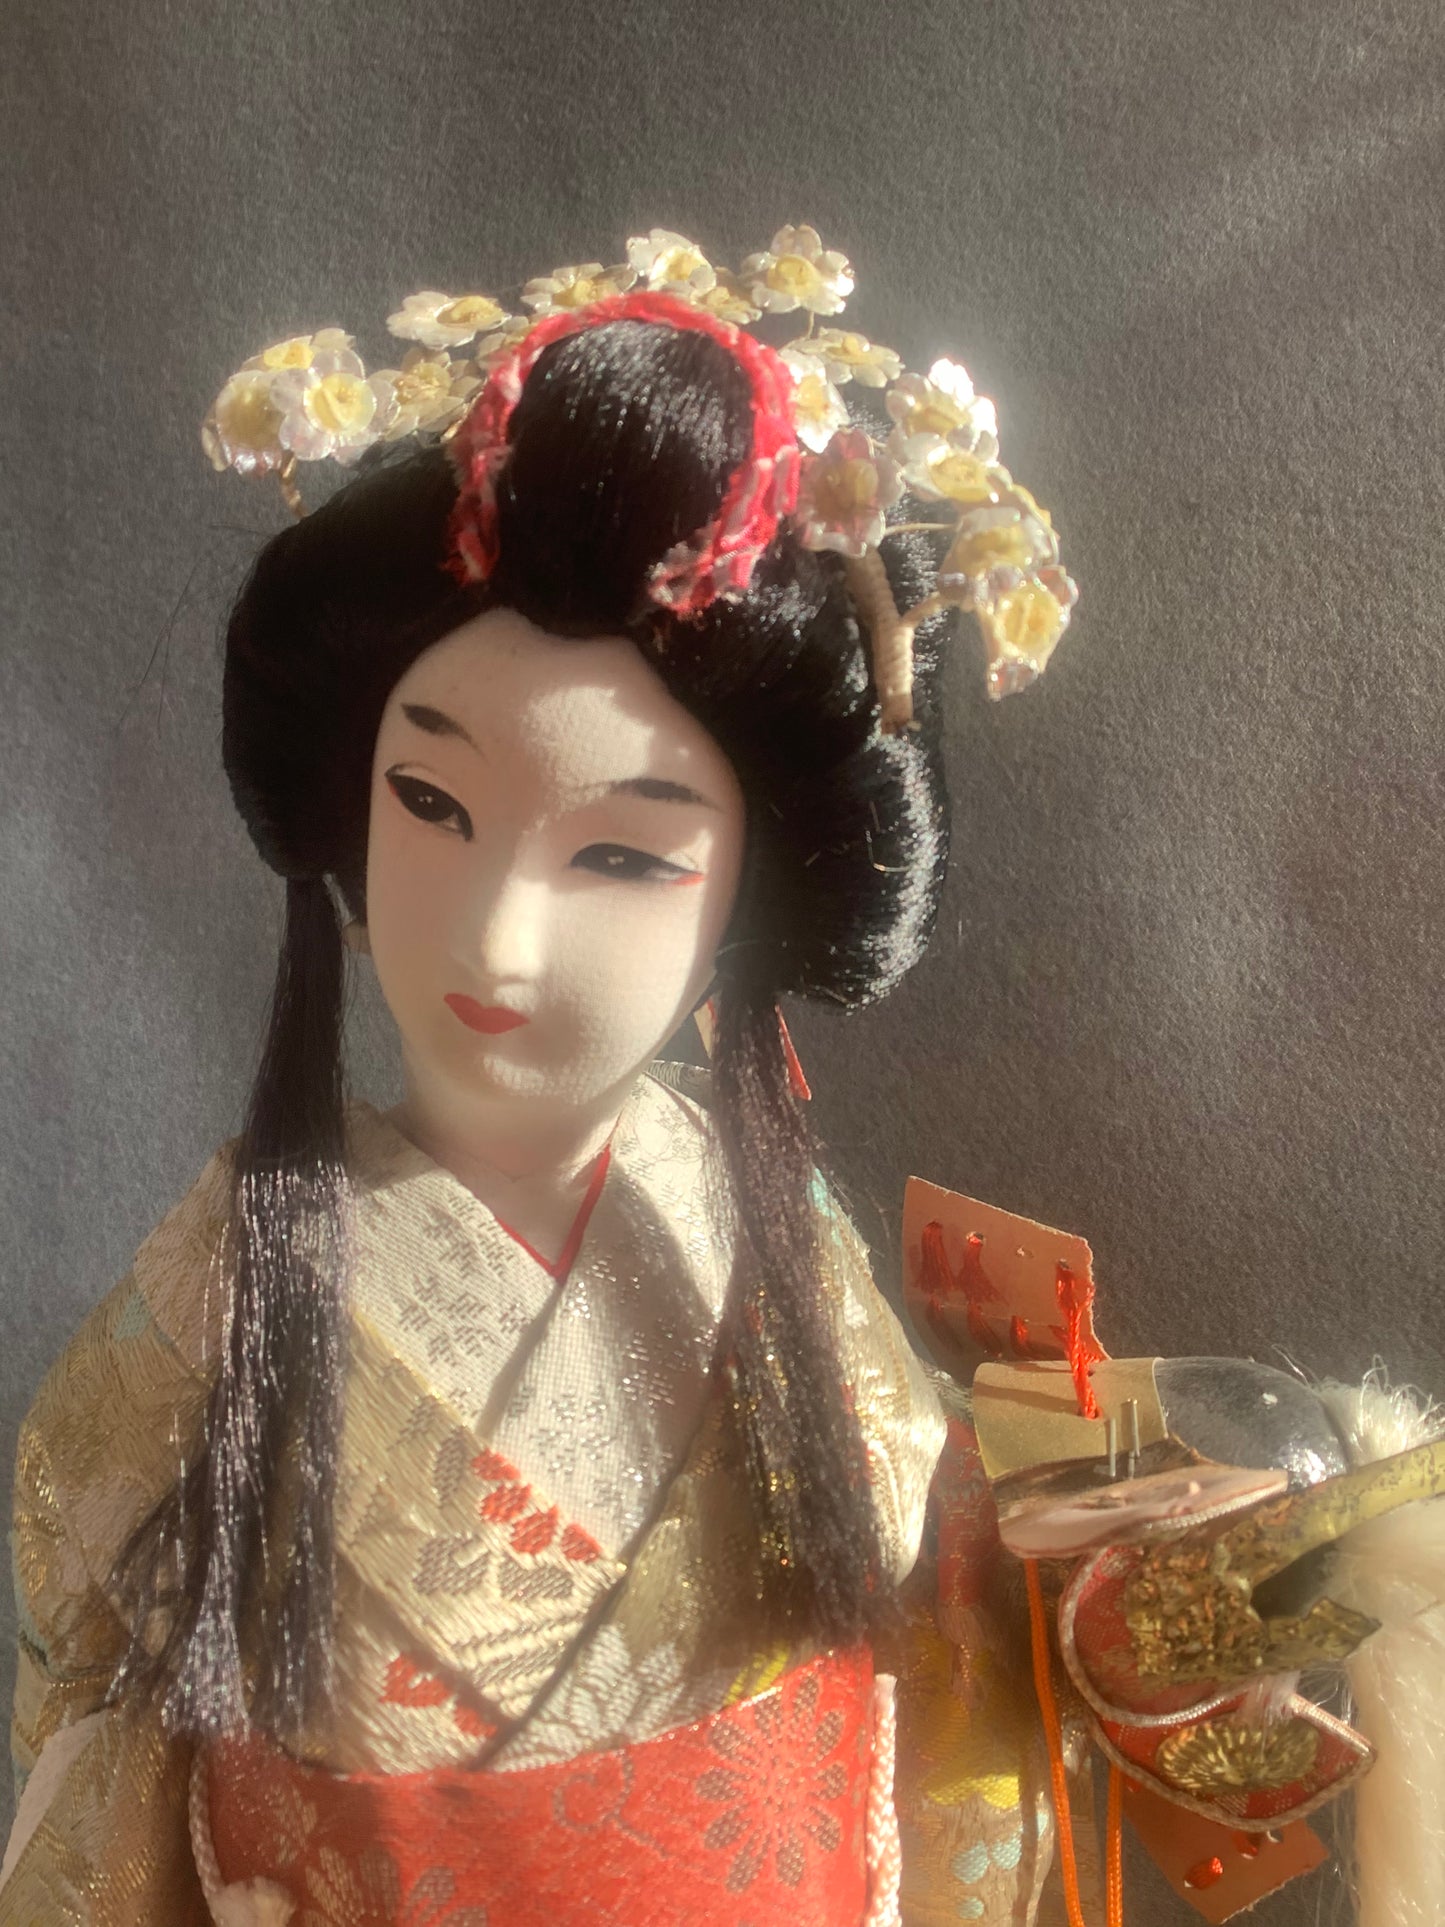 Kabuki Doll